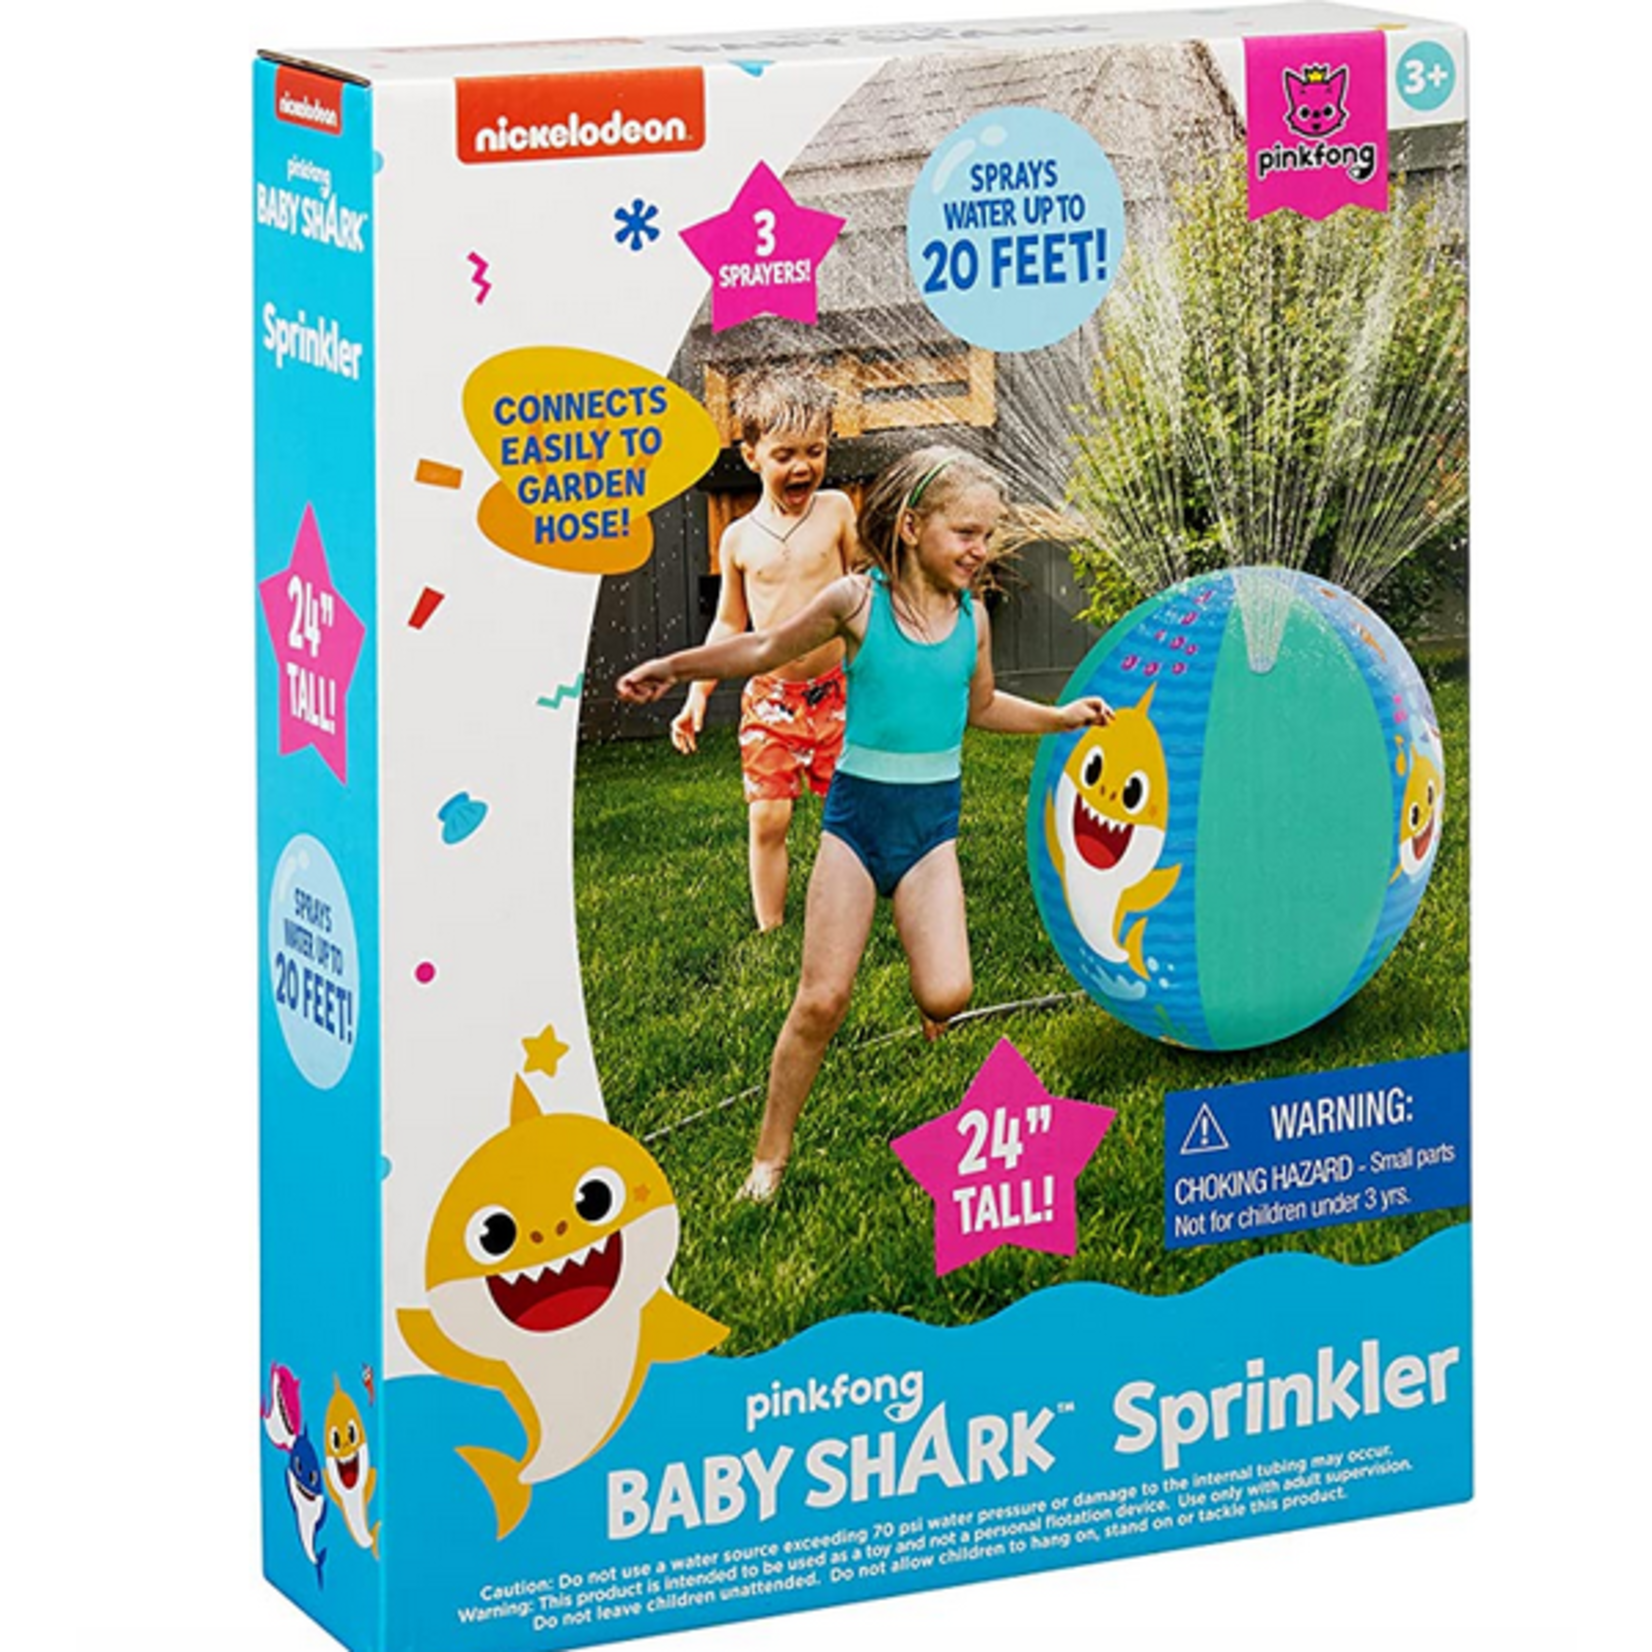 Fubbles Baby Shark Sprinkler